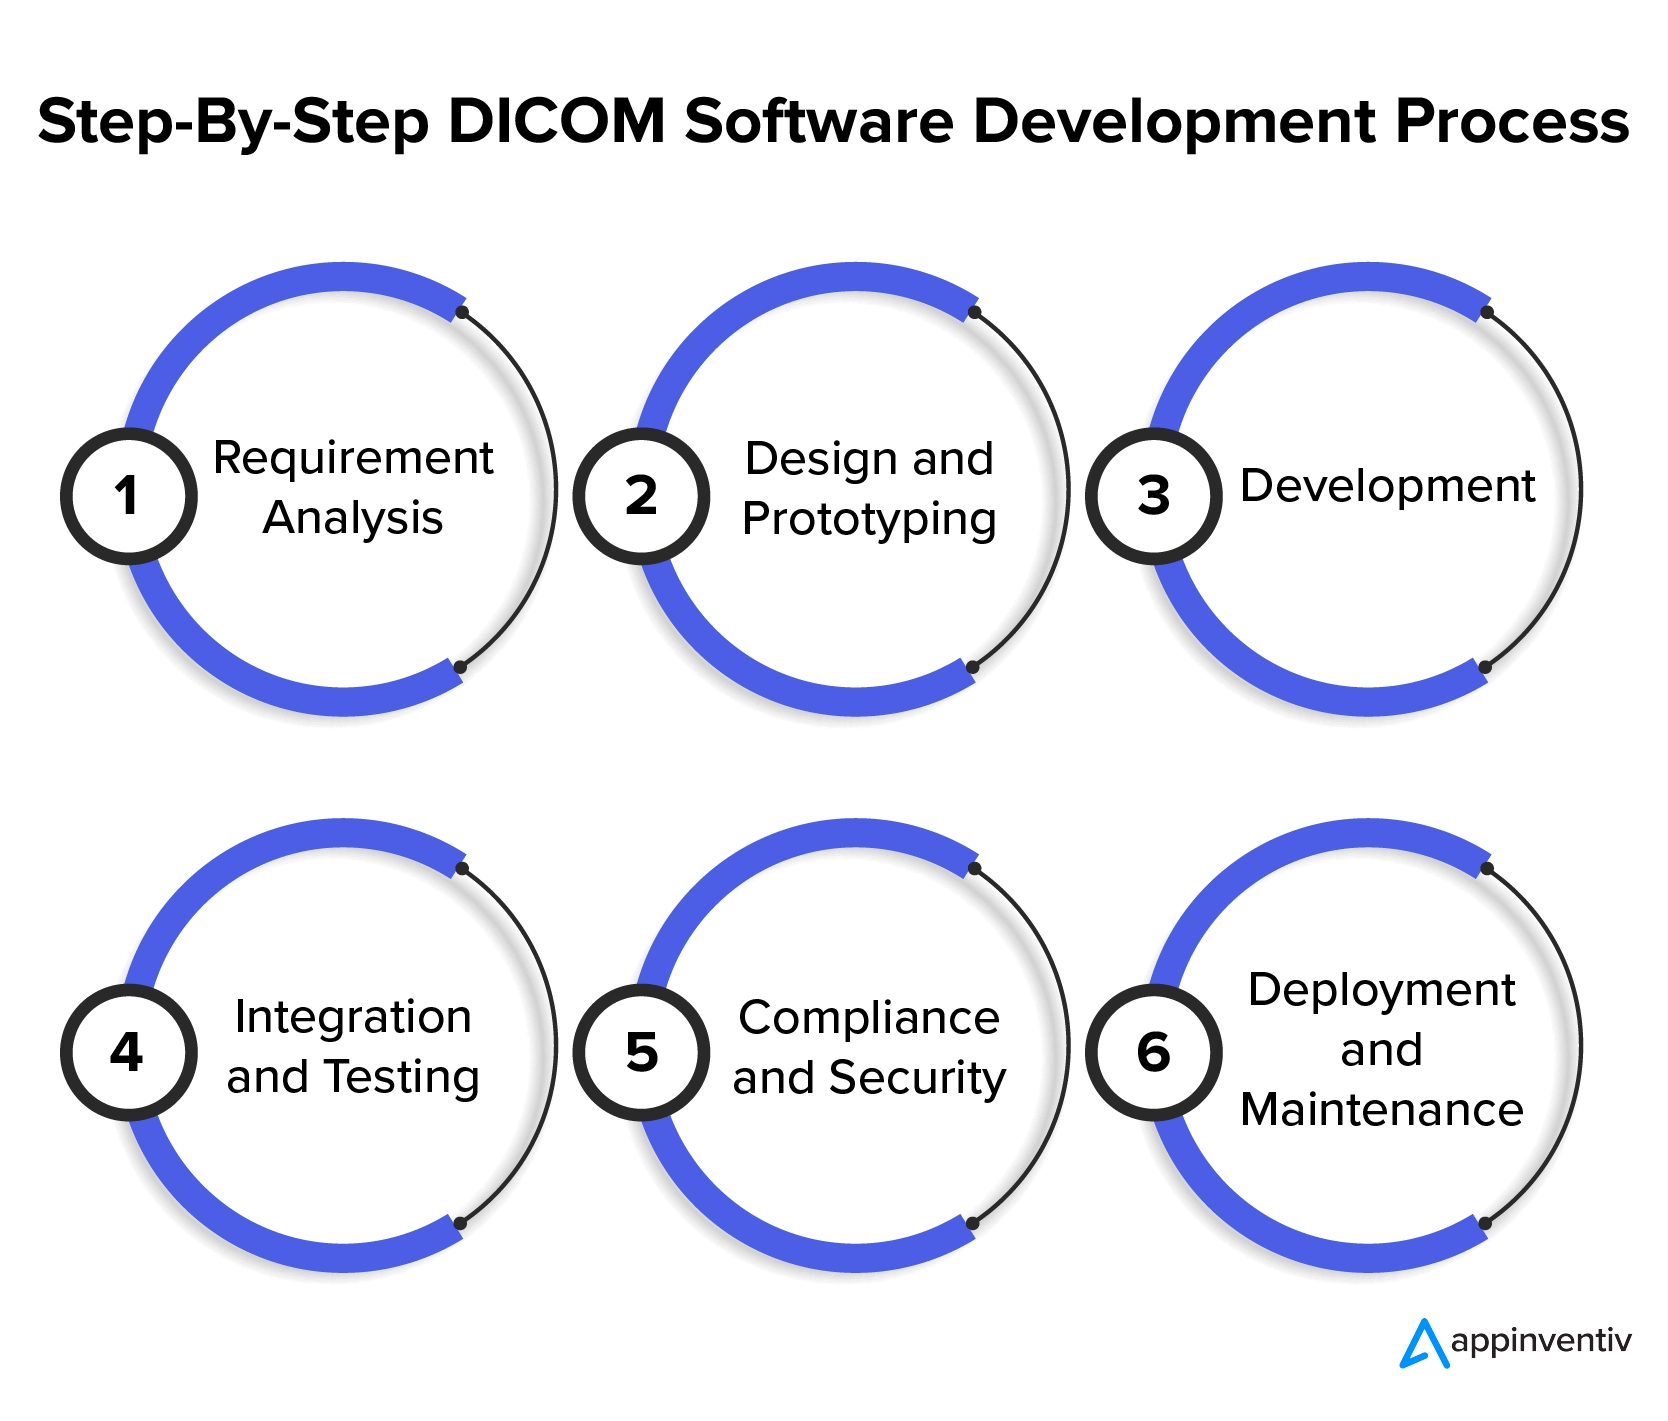 عملية تطوير برمجيات DICOM خطوة بخطوة